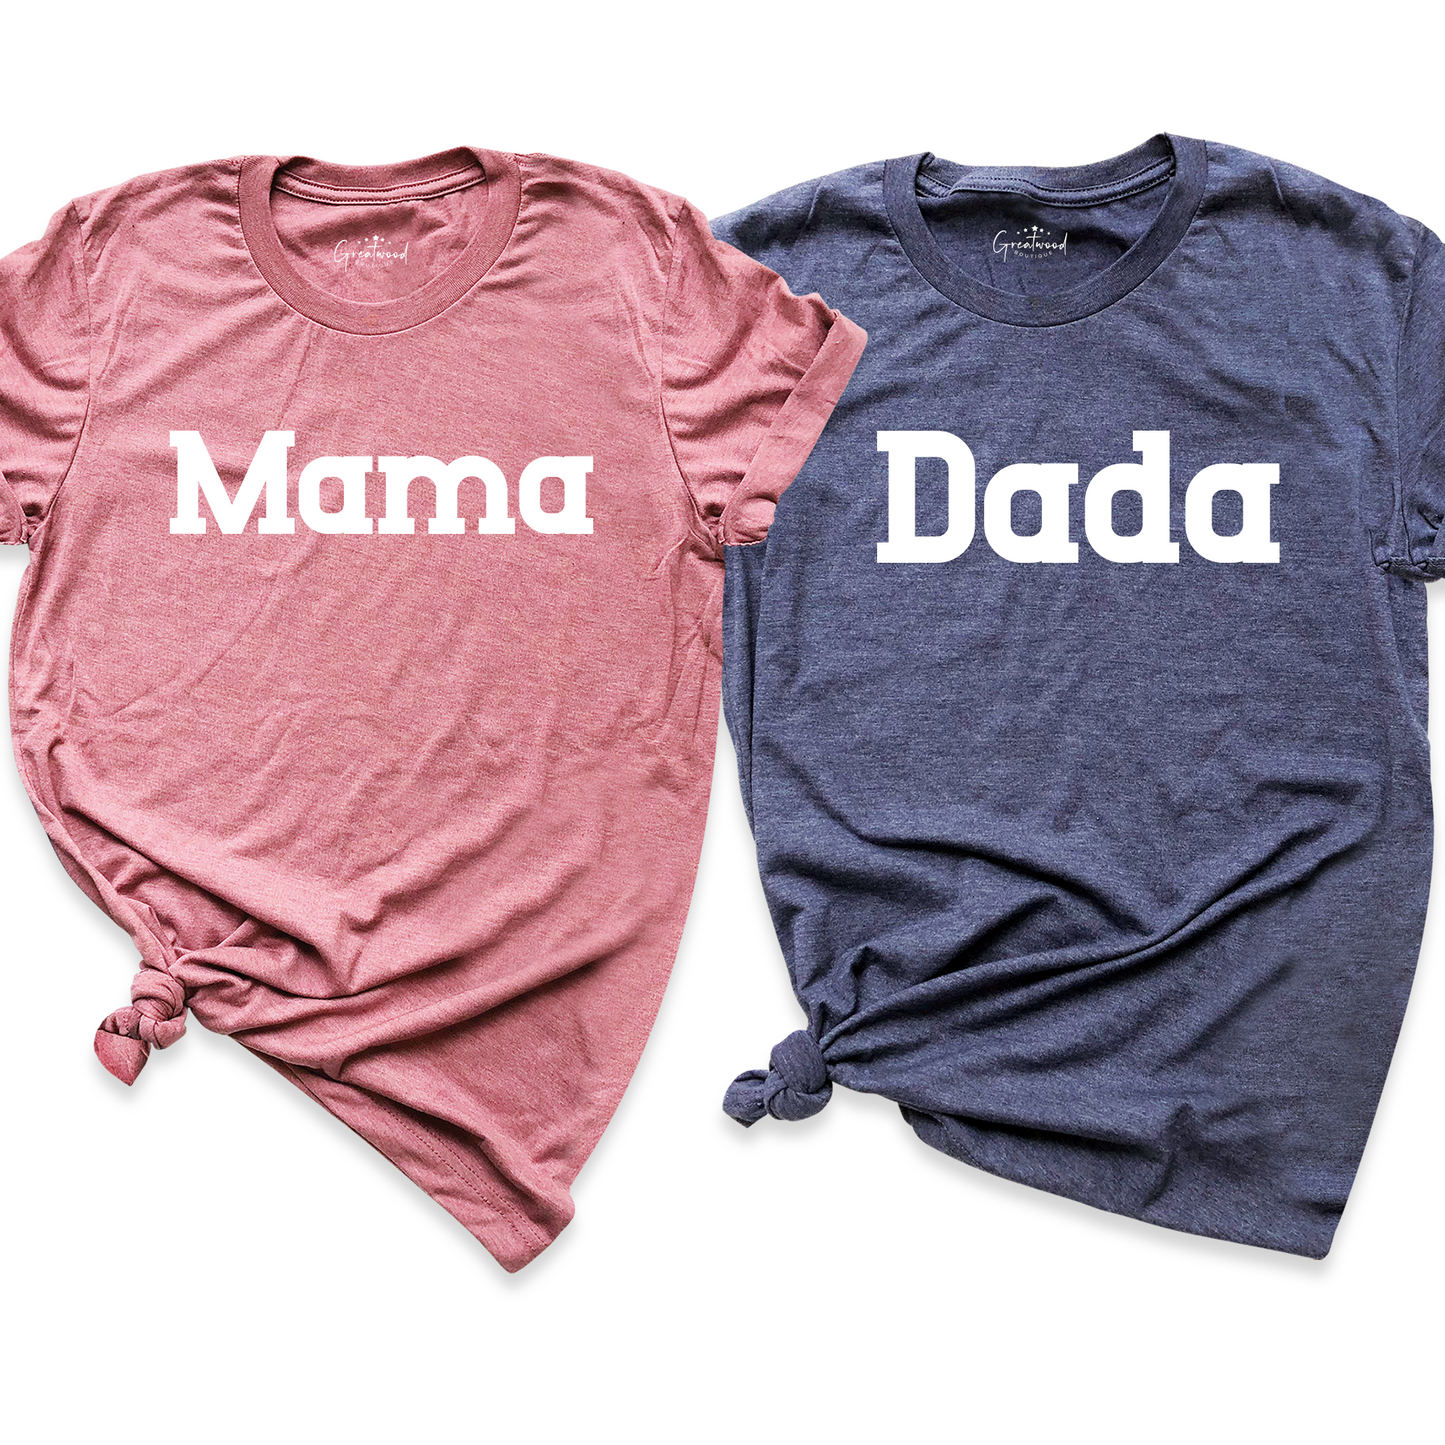 Mama Dada Shirt